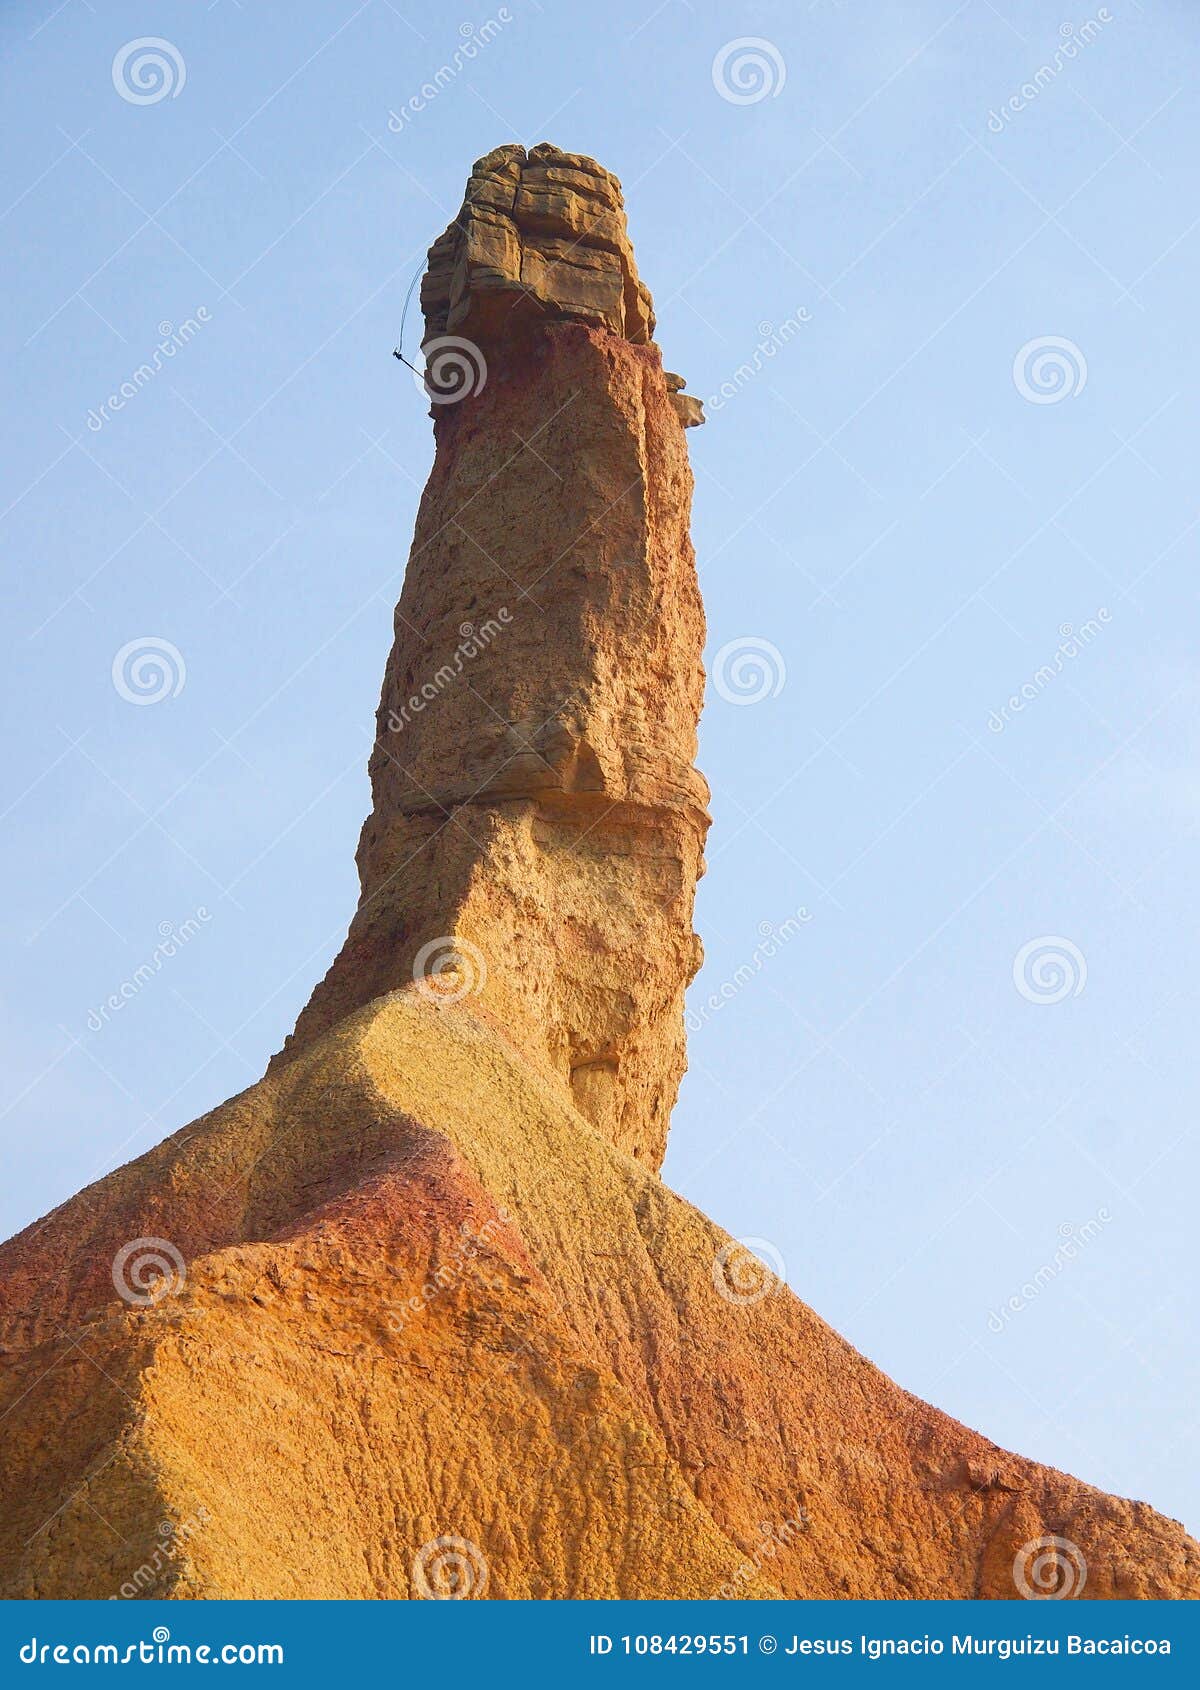 roca-de-la-piedra-arenisca-en-forma-un-pene-el-bardenas-navarra-108429551.jpg